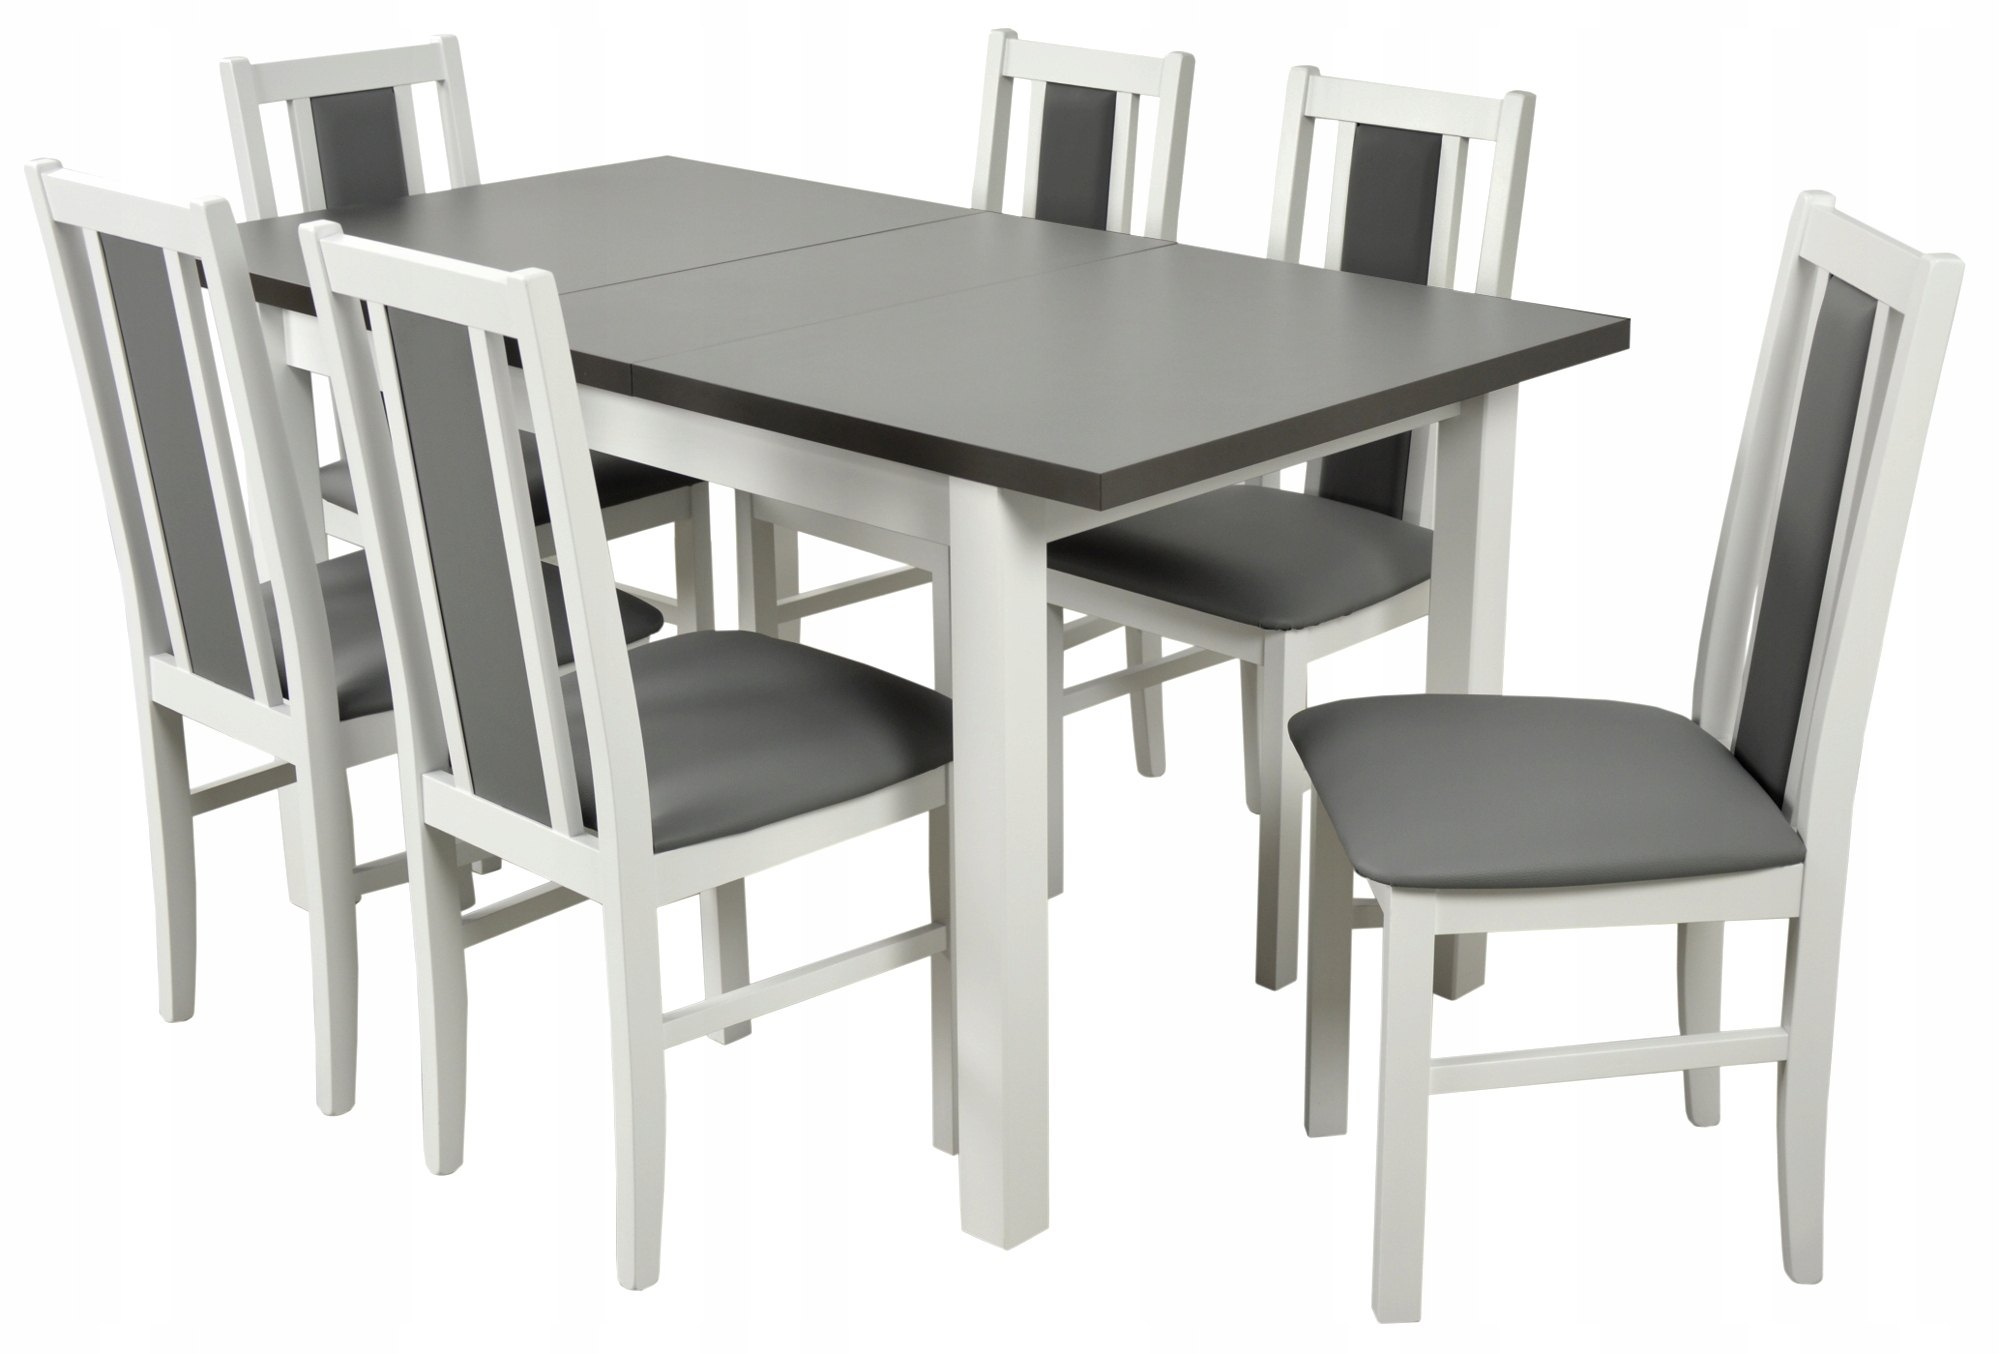 Кухонный комплект стол и стулья. Стол кухонный серый. Серый кухонный стол и стулья. Обеденный стол для кухни. Серый стол на кухню.